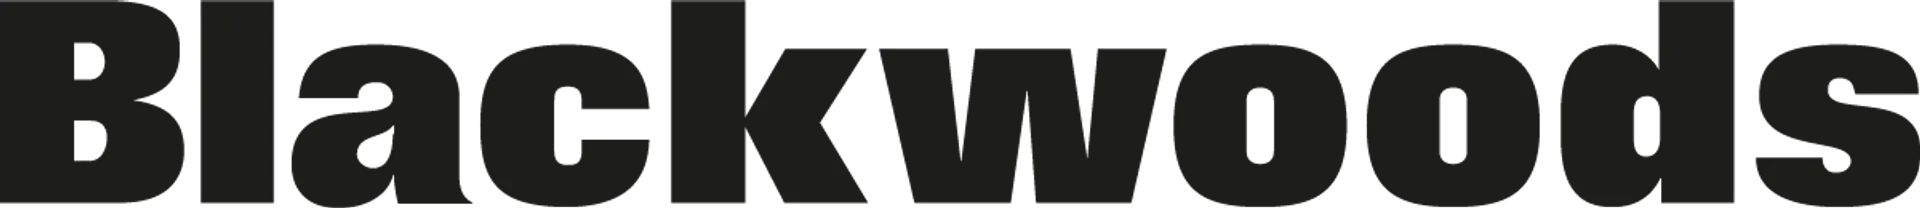 BLACKWOODS logo of current flyer